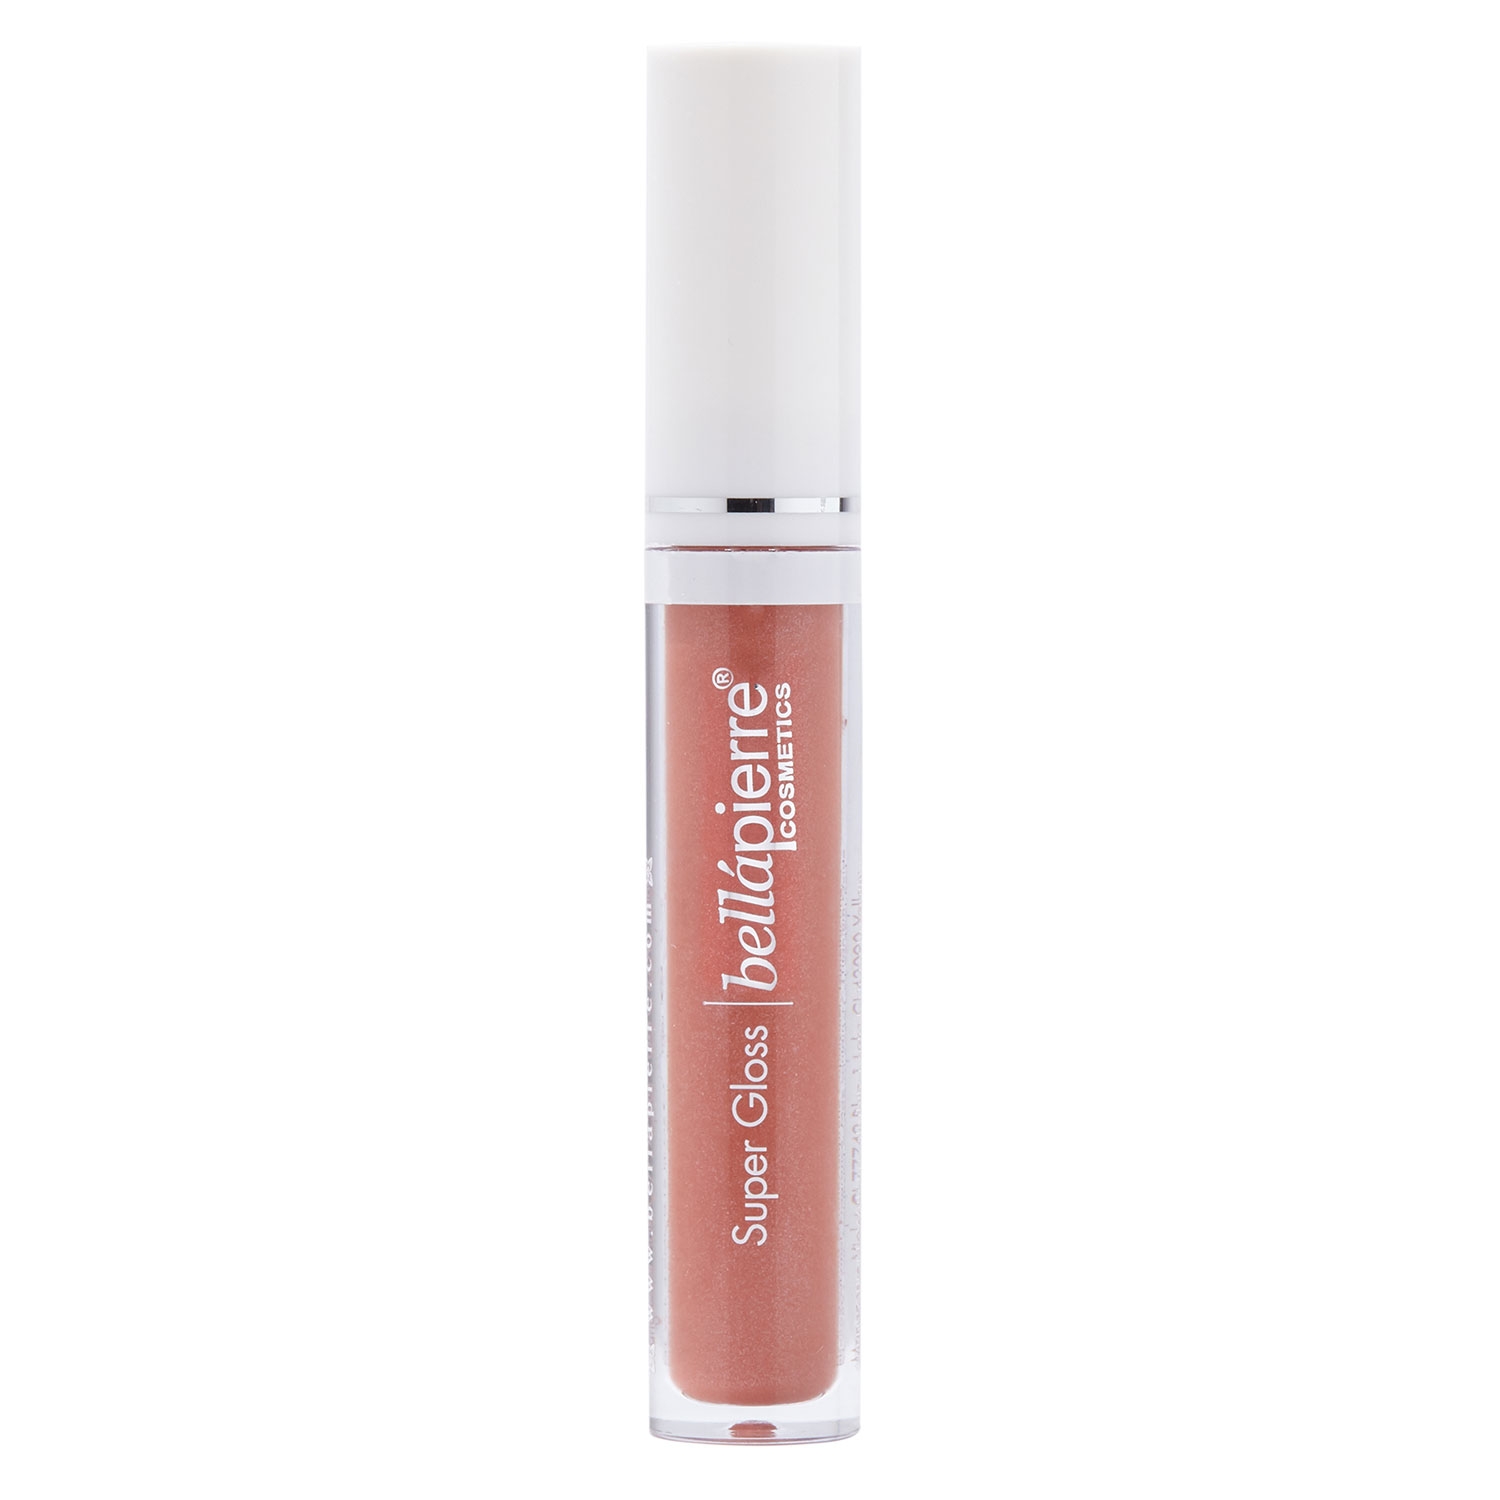 Produktbild von bellapierre Lips - Super Gloss Vanilla Pink